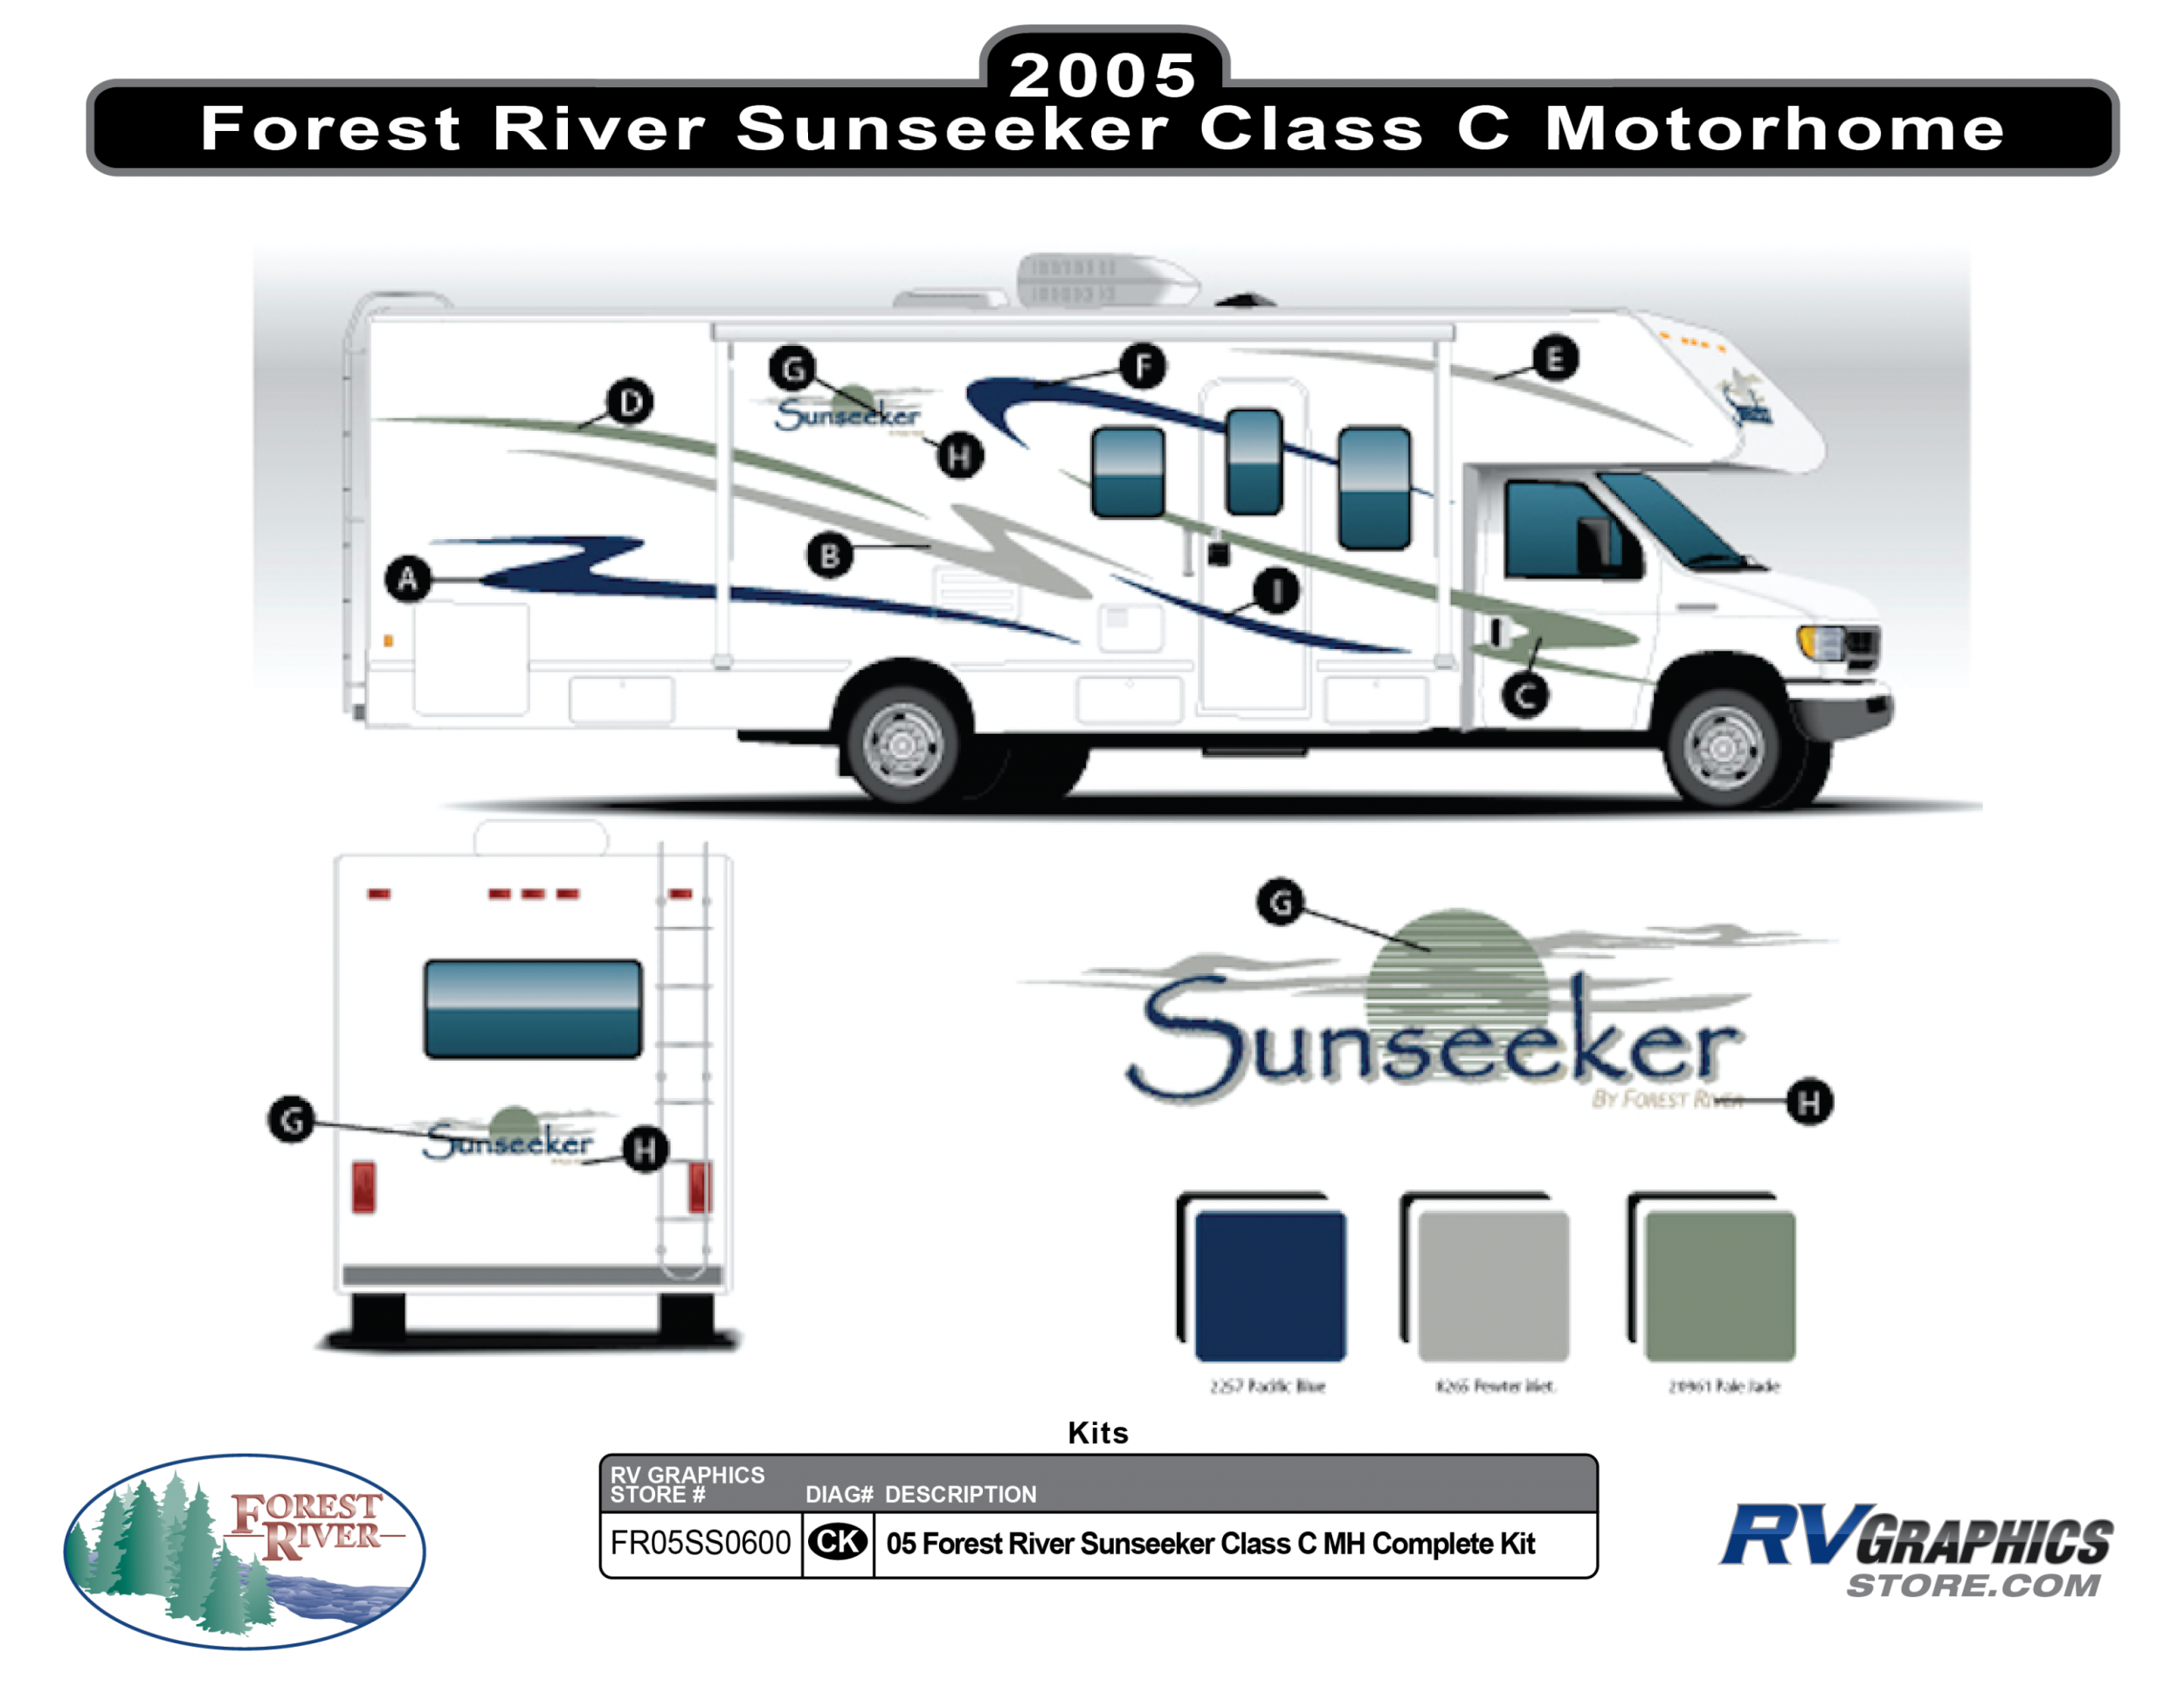 Sunseeker - 2005 Sunseeker Class C Motorhome